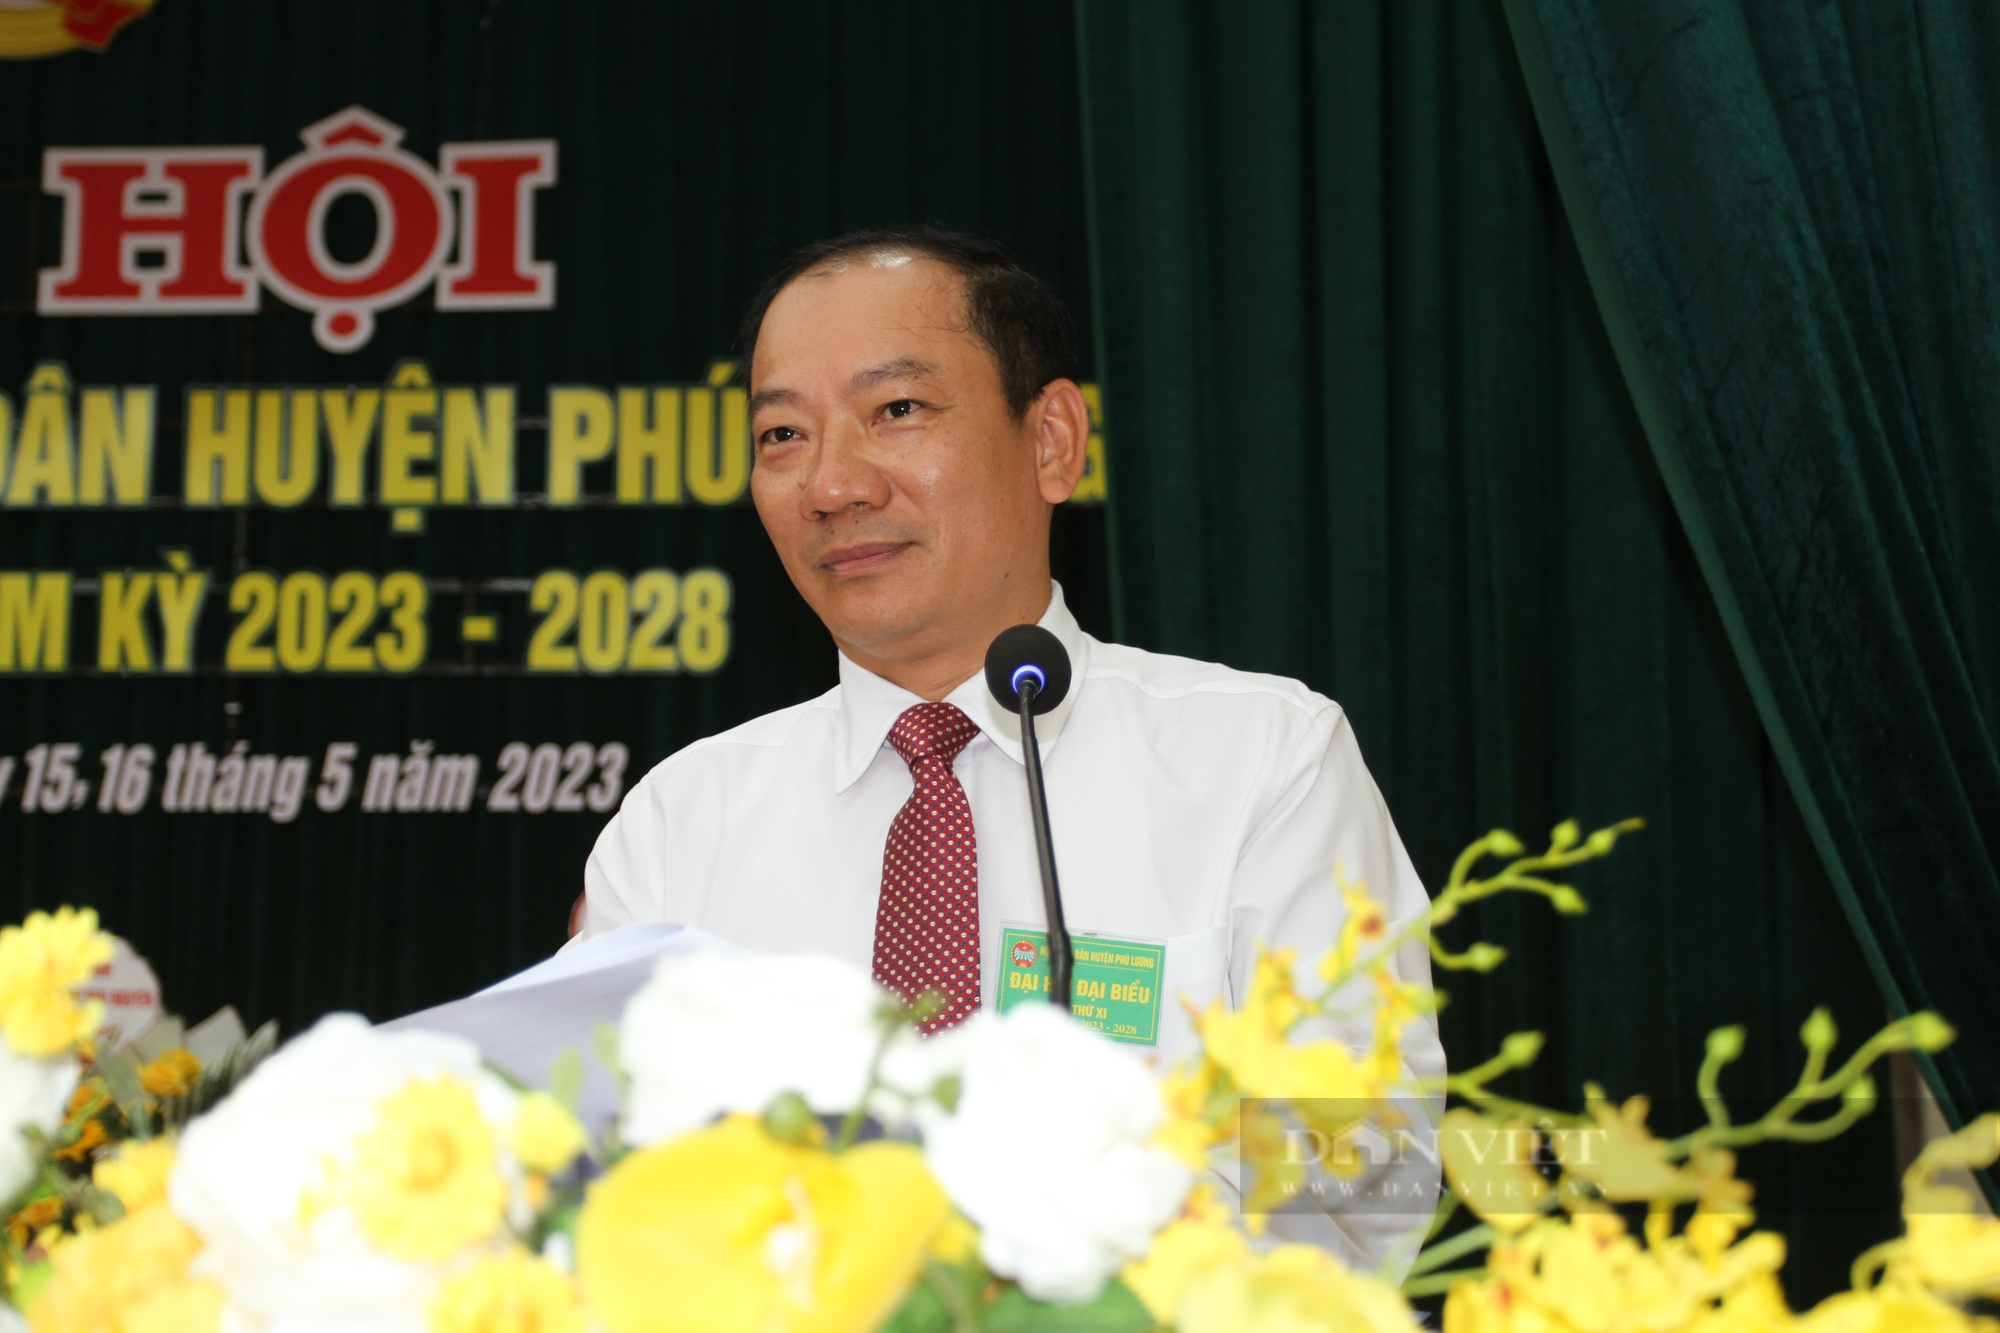 Đại hội Hội Nông dân huyện Phú Lương nhiệm kỳ 2023 – 2028: Bà Trịnh Ngọc Trà tái đắc cử chức danh Chủ tịch - Ảnh 2.